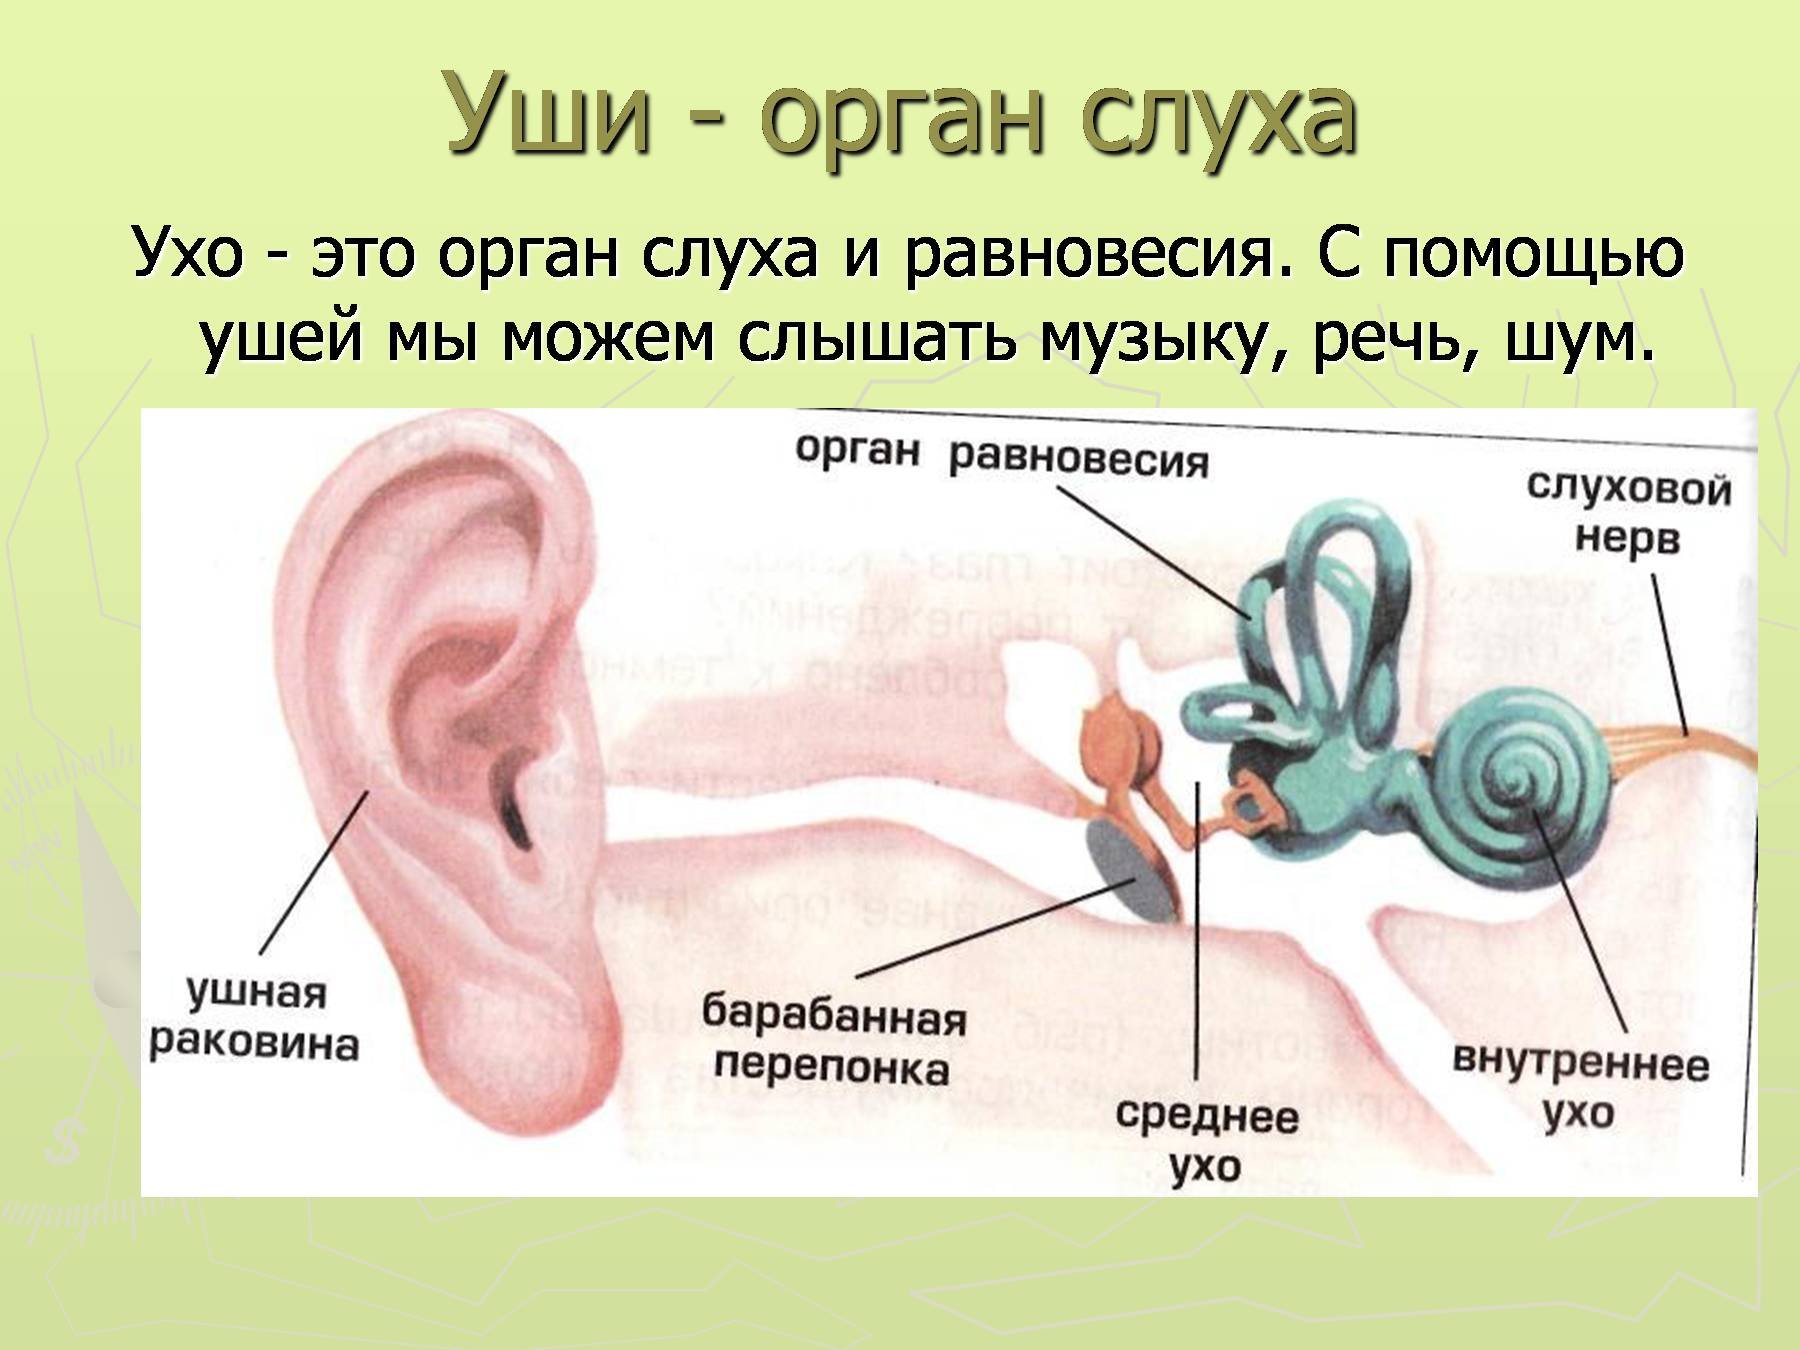 Конспект орган слуха. Уши орган слуха 3 класс окружающий мир. Органы слуха человека 3 класс окружающий мир. Картинка строение уха человека для детей. Орган слуха доклад 3 класс окружающий мир.